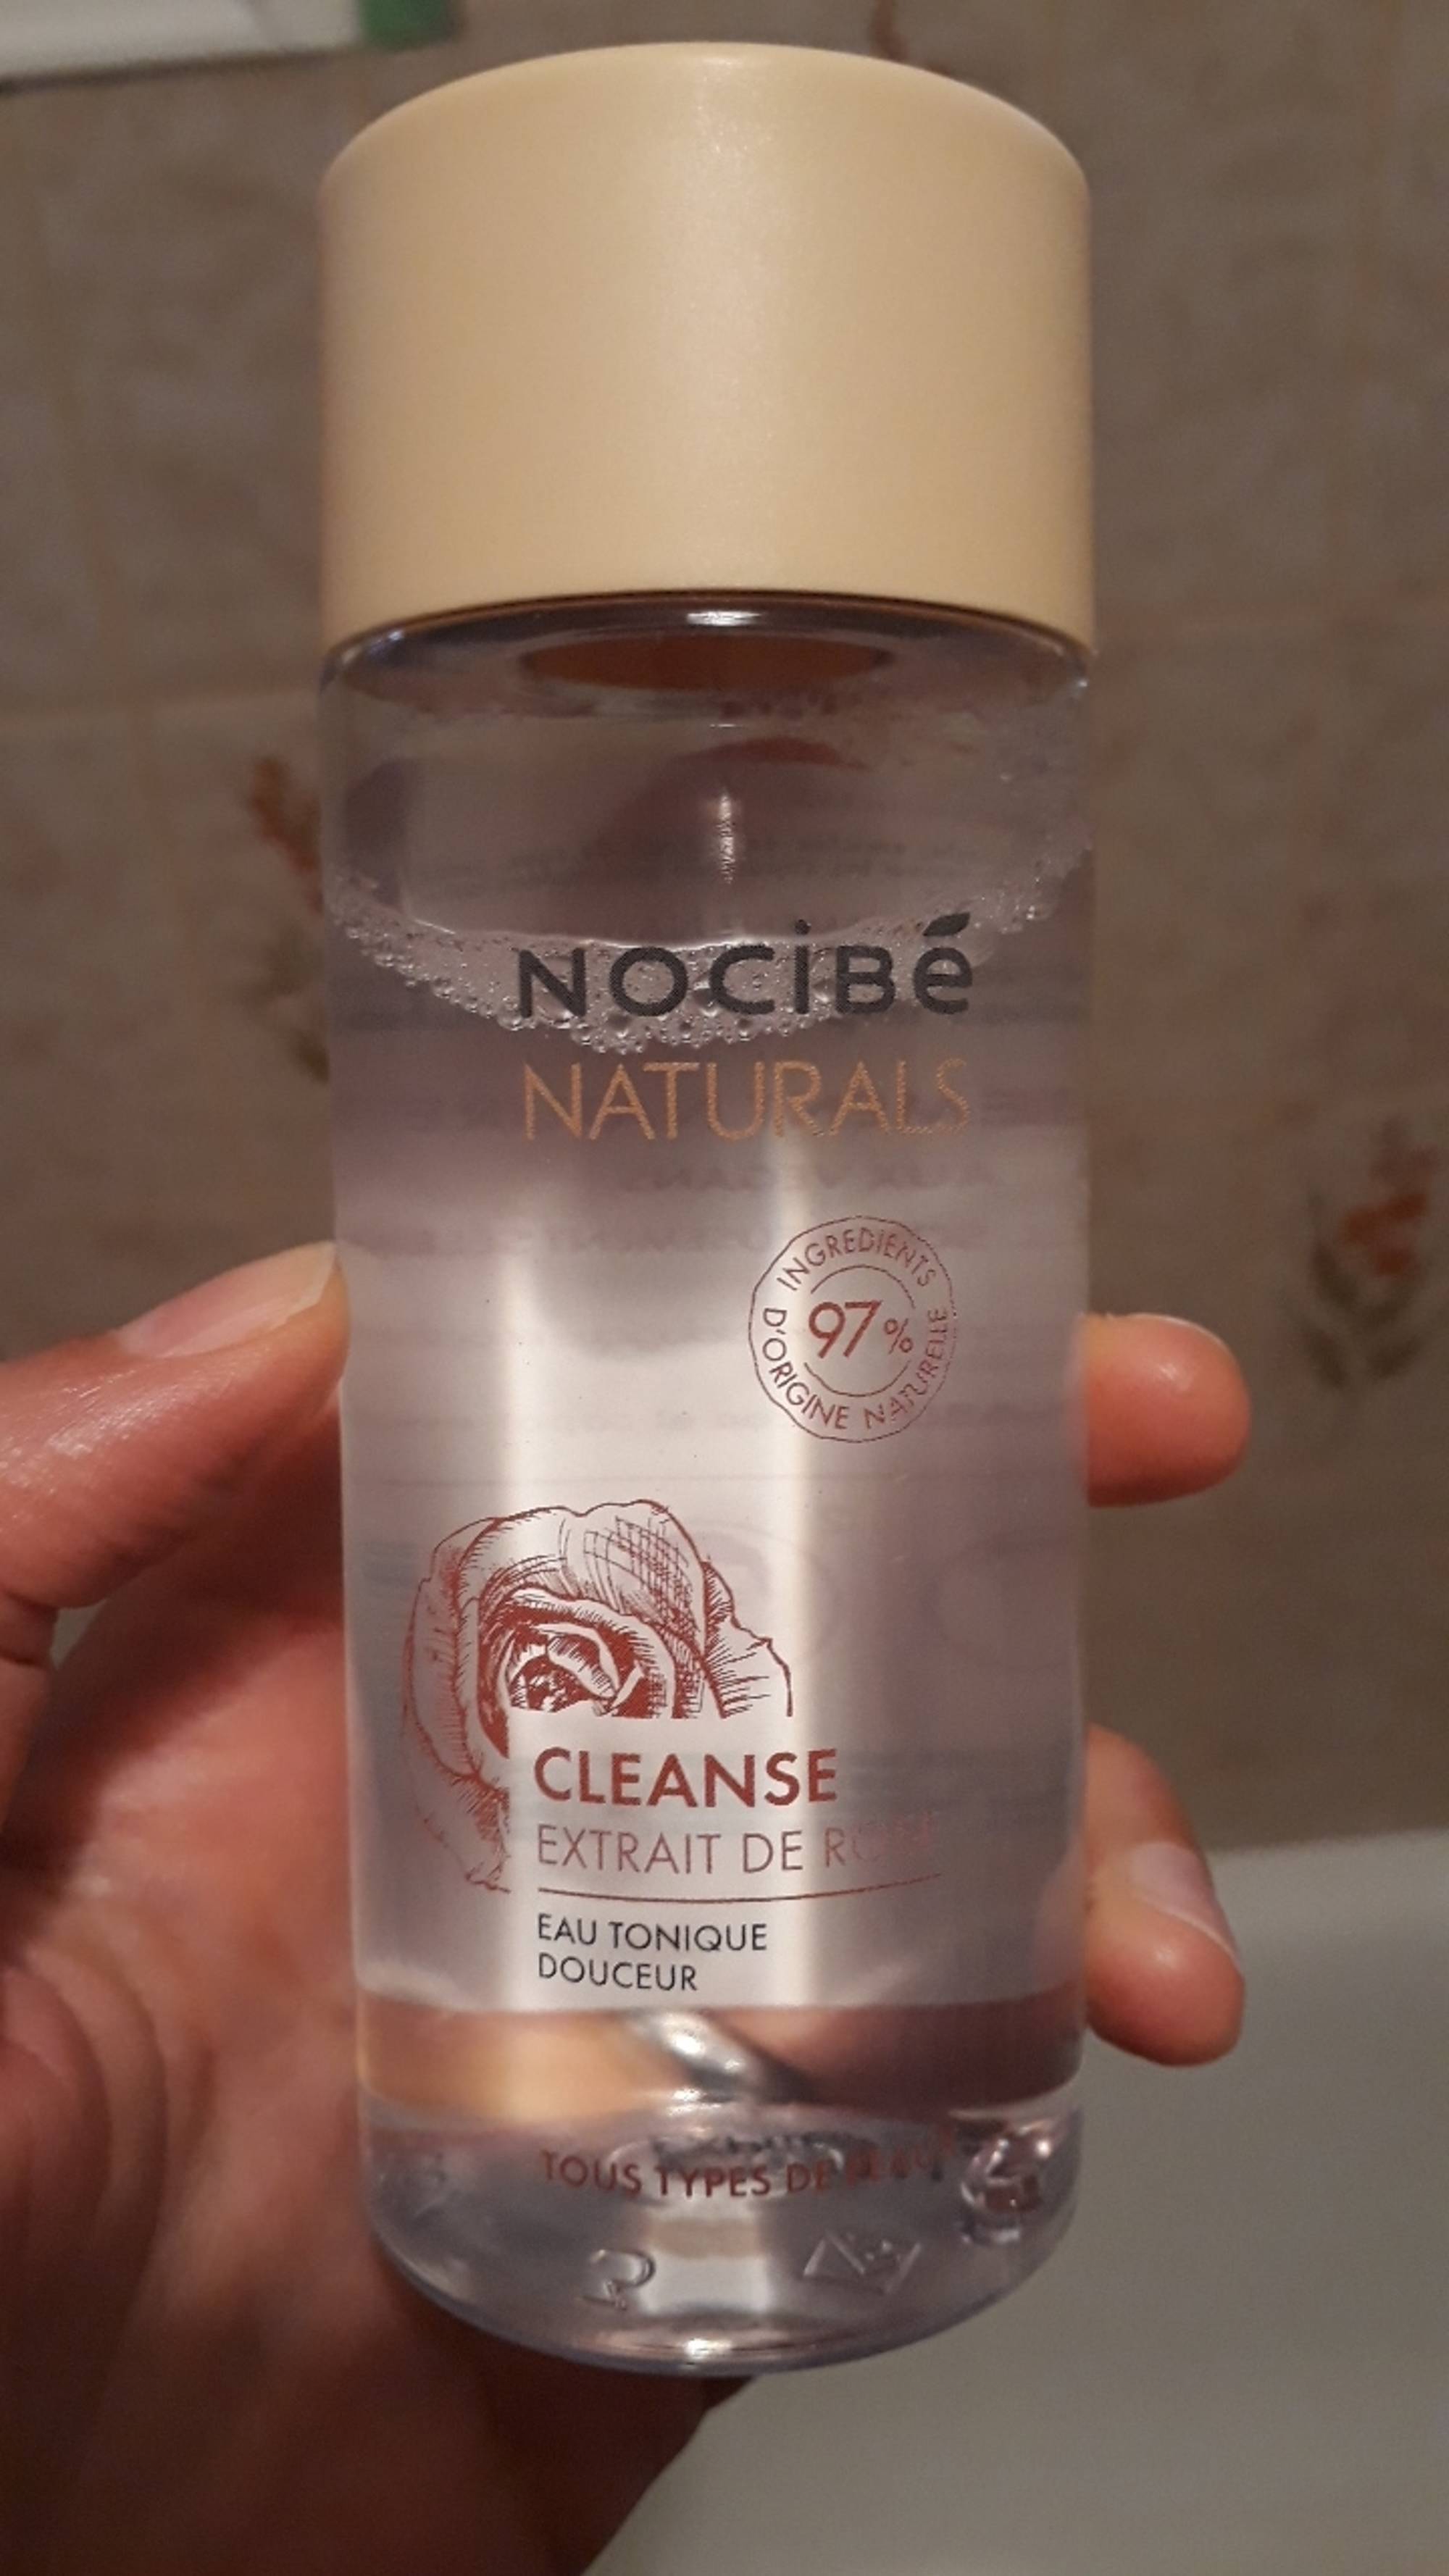 NOCIBÉ - Naturals cleanse - Extrait de rose 